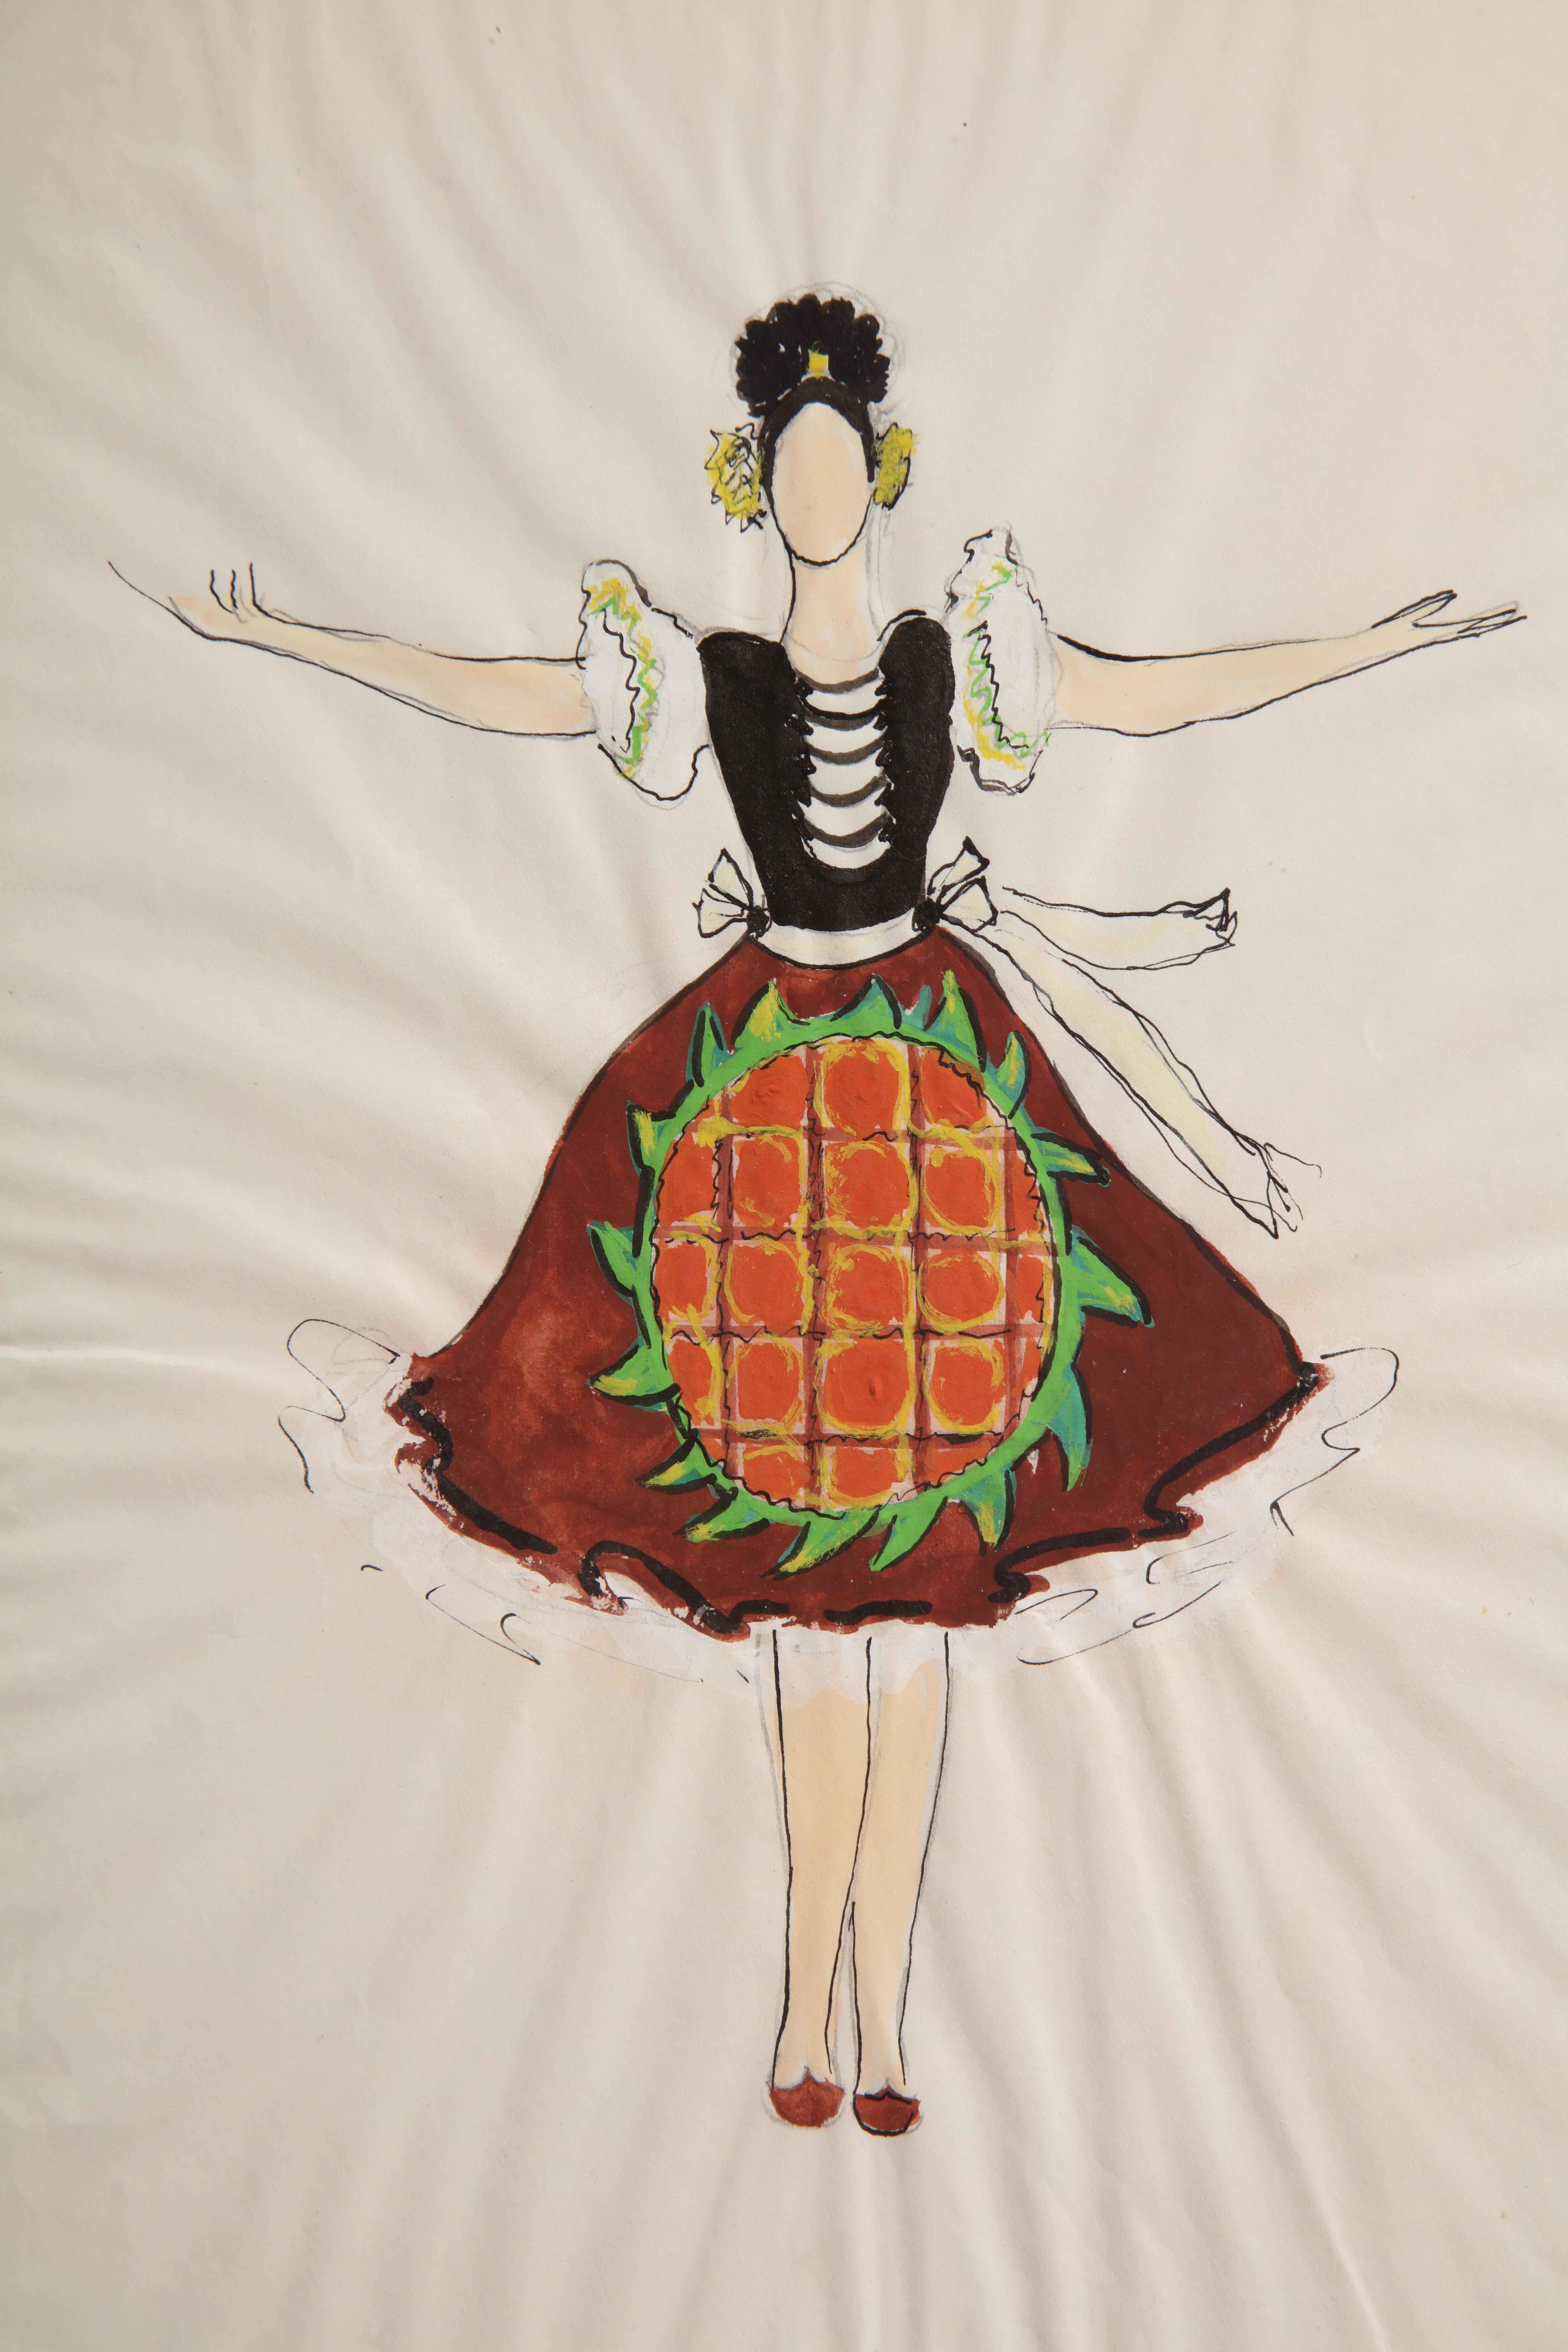 Aquarell mit Bleistift und Tusche einer jungen Frau in einer traditionellen russischen Tracht, die für die Ballets Russes entworfen wurde. Kachurovsky entwarf nicht nur Kostüme für die Ballettkompanie, sondern war auch Vortänzer und Choreograf.